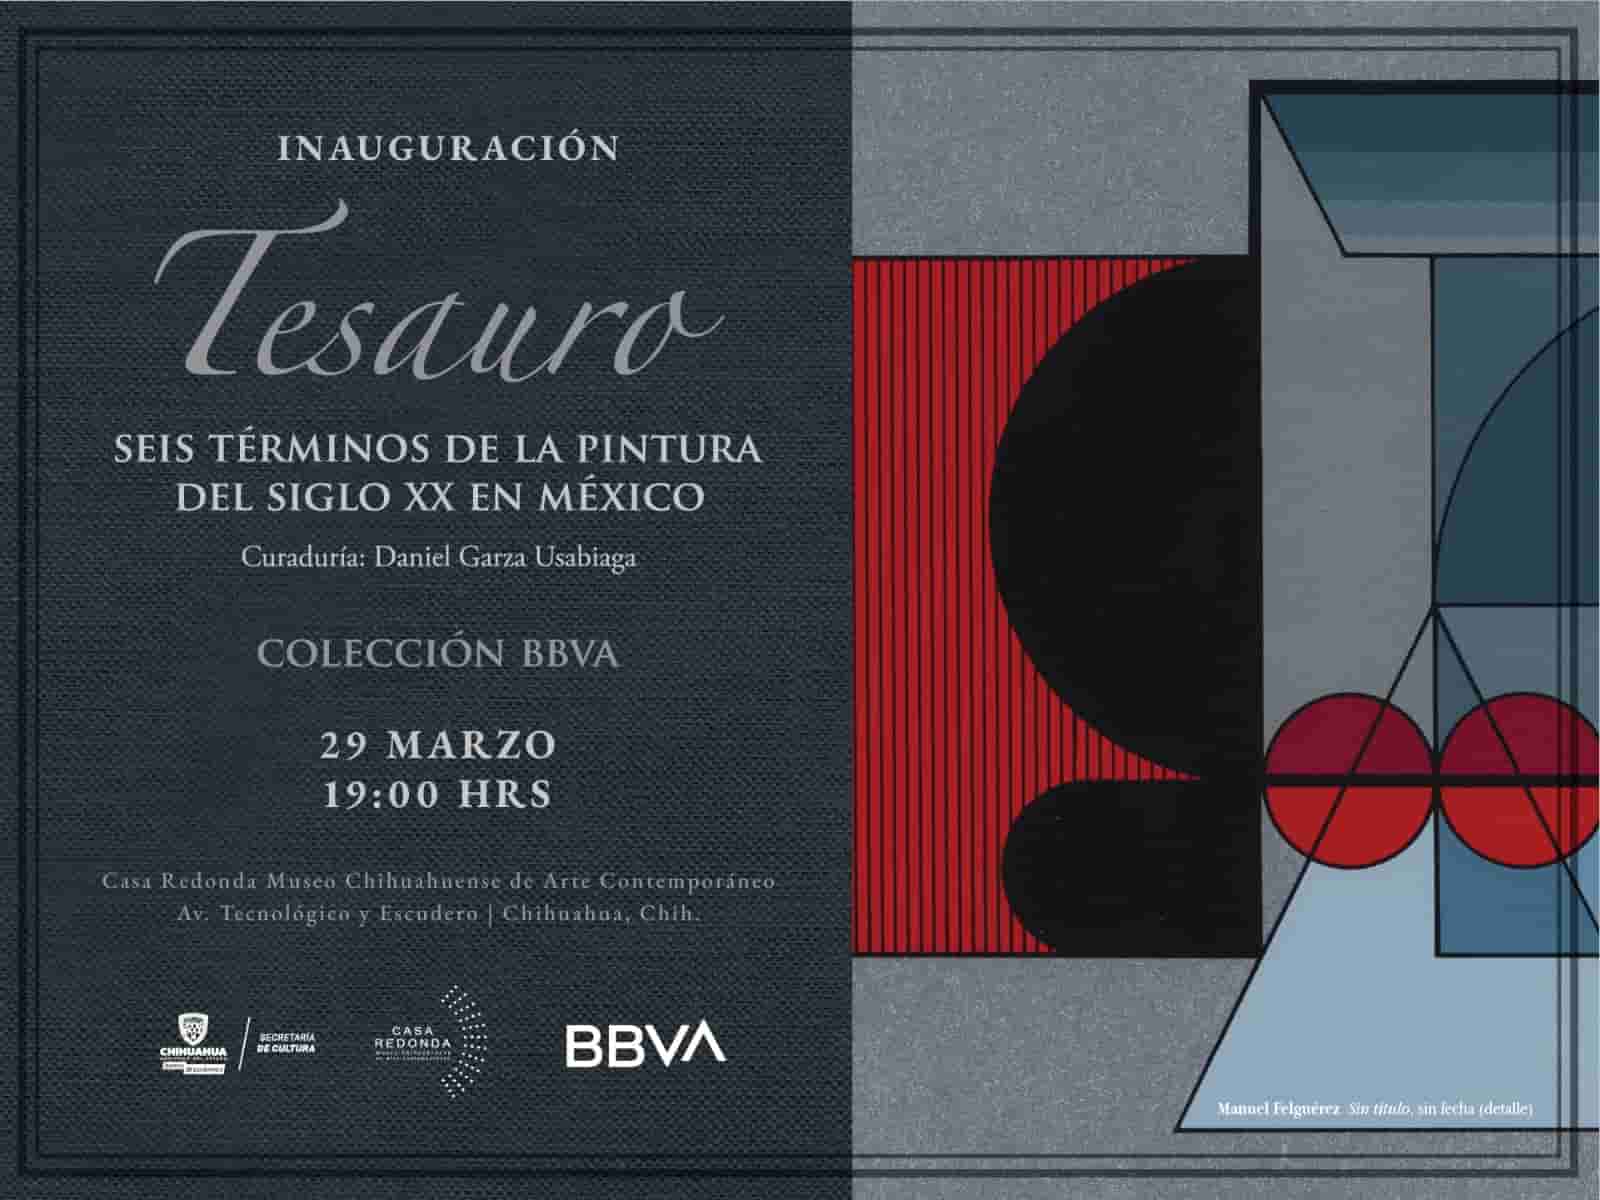 Se presentará la exposición “Tesauro” en el Museo Chihuahuense de Arte Contemporáneo “Casa Redonda”